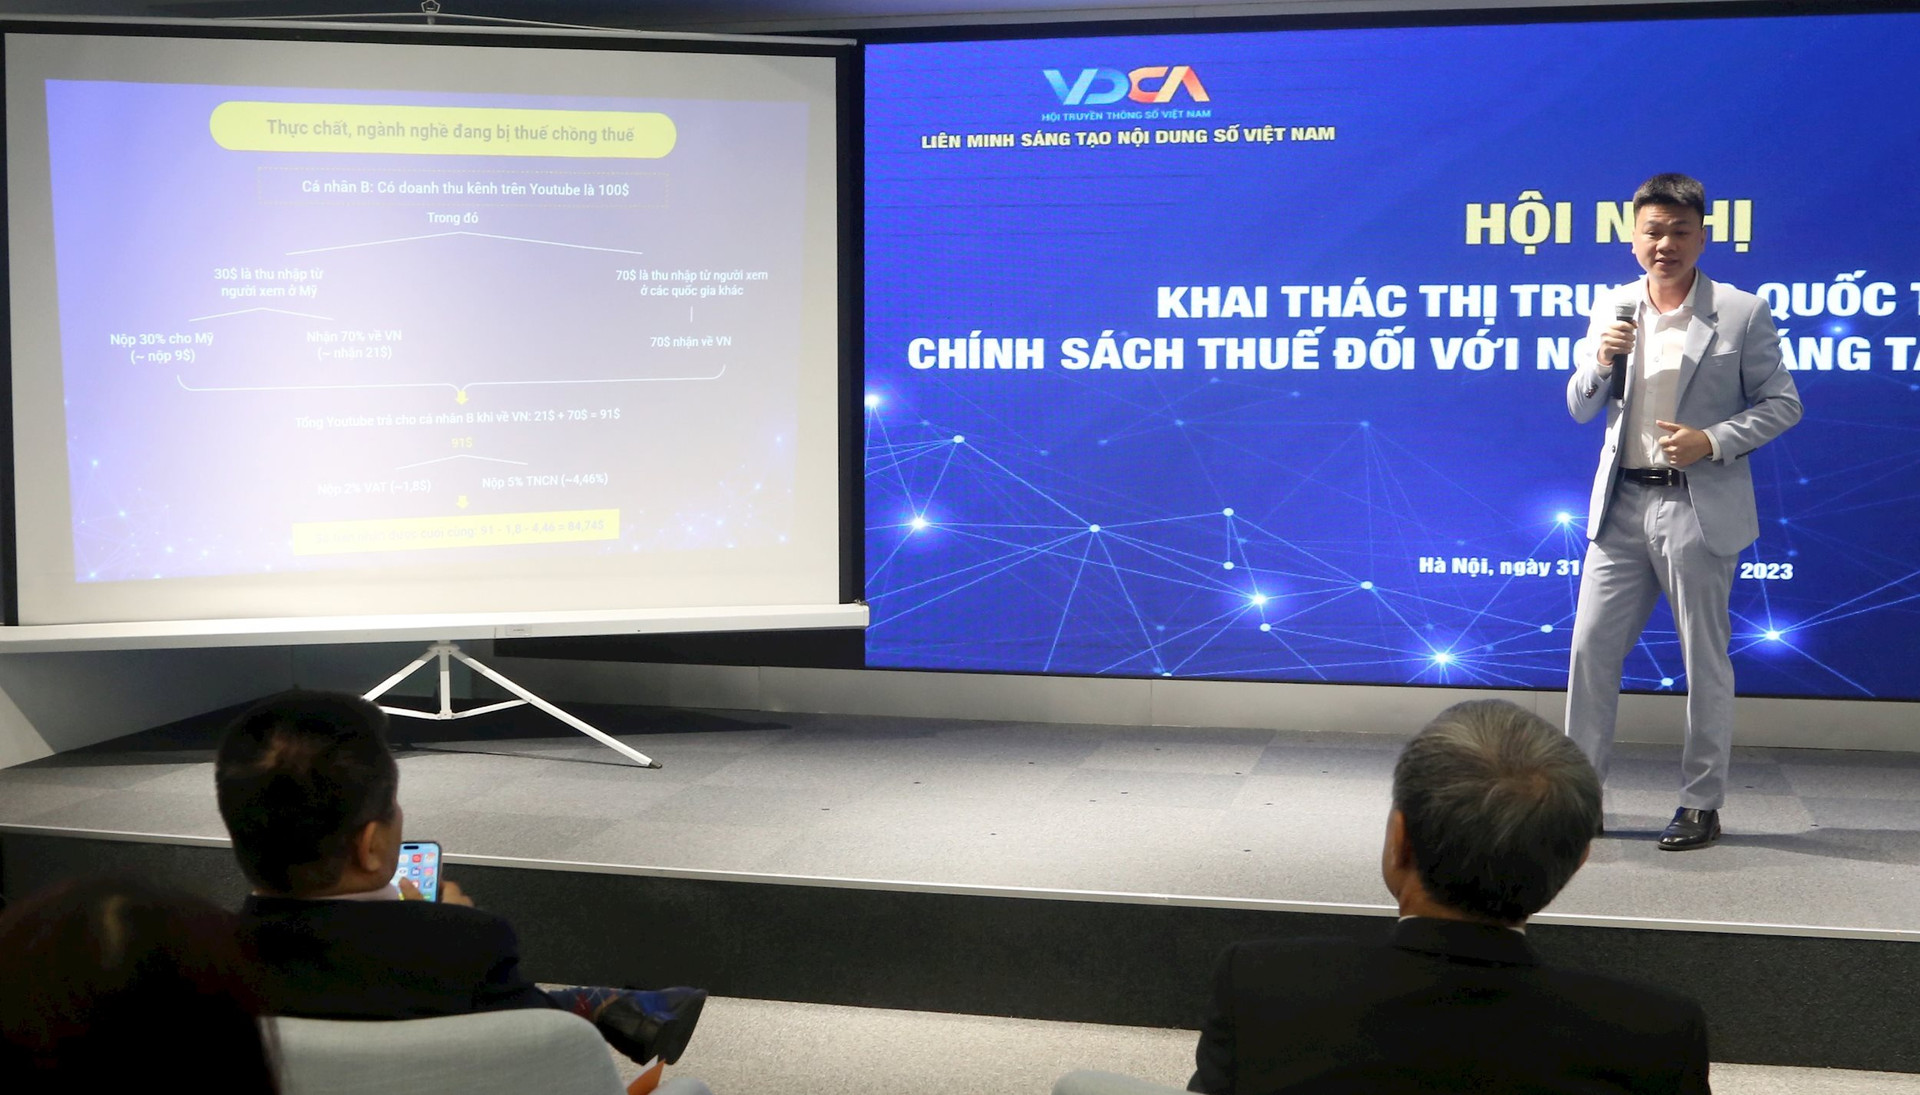 Nghề 'hot' kiếm tiền online: 20.000 người Việt sáng tạo nội dung trên mạng xã hội, đạt doanh thu 1.500 tỷ đồng - Ảnh 2.